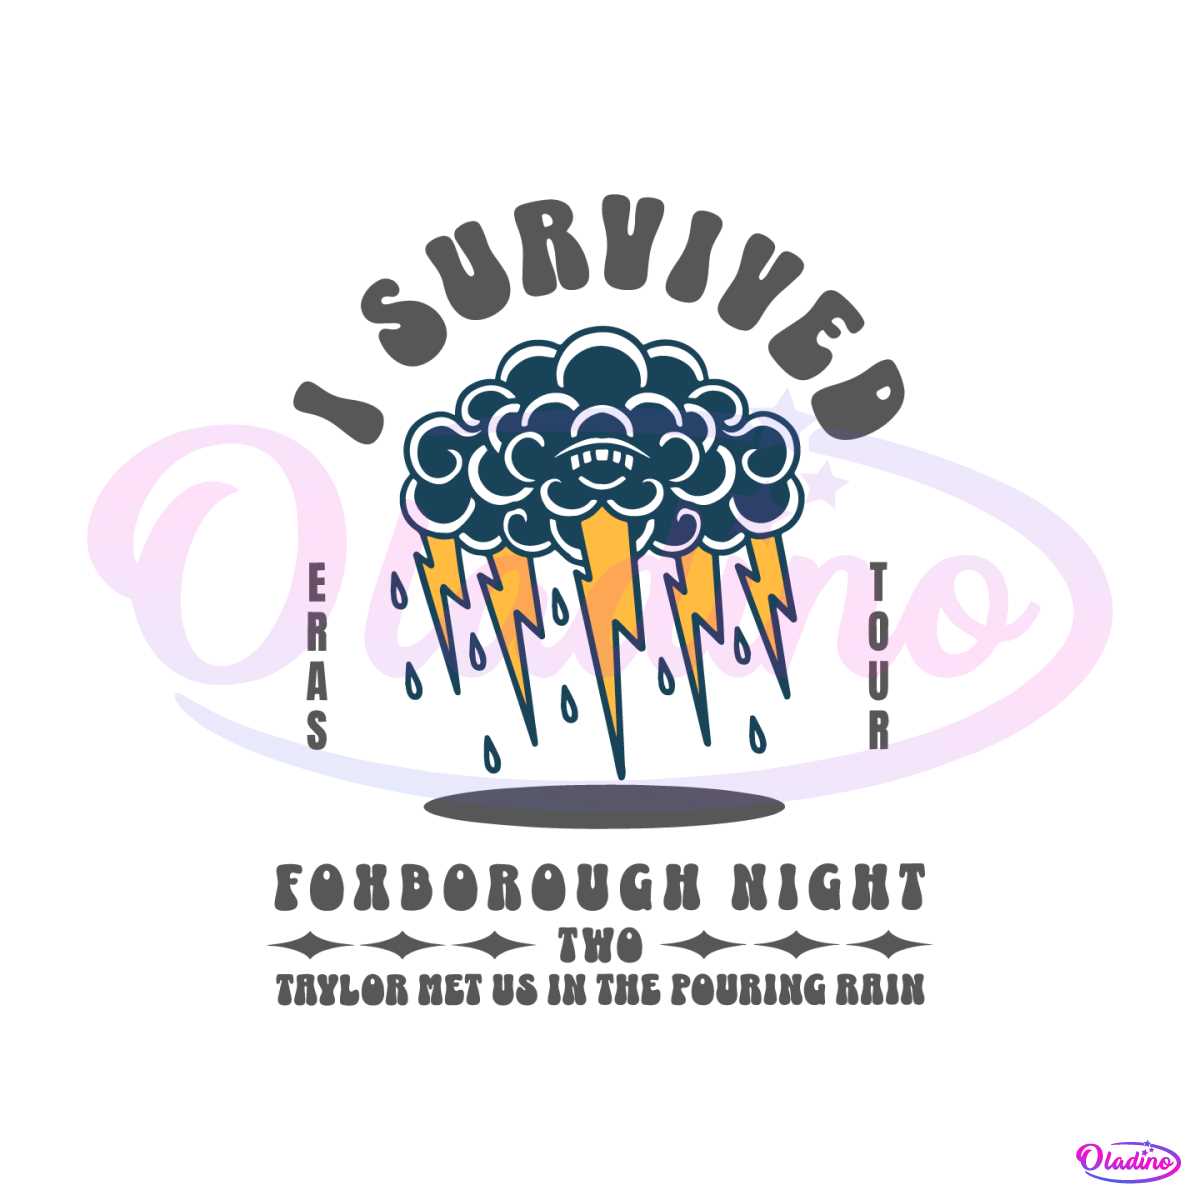 i-survived-foxborough-night-2-eras-tour-svg-cutting-file